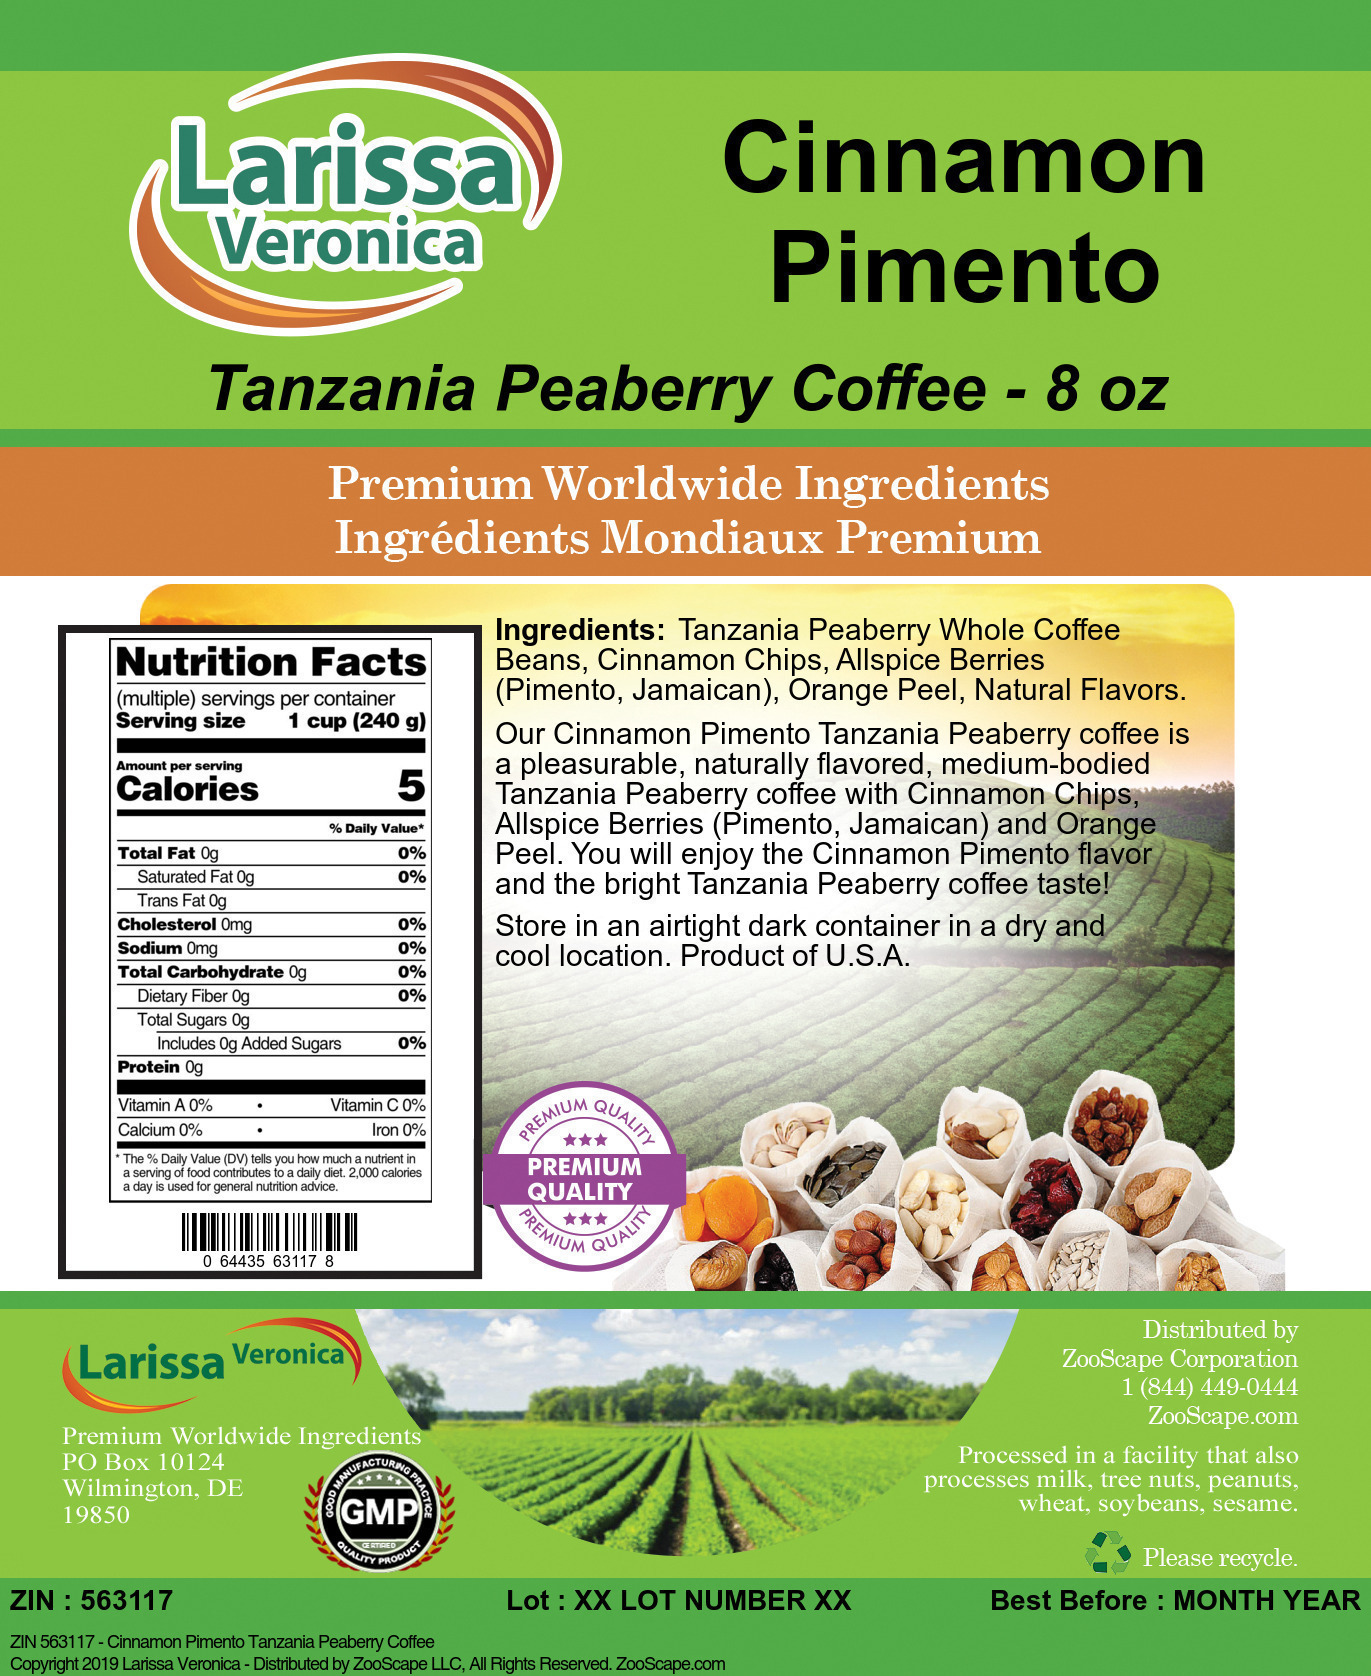 Cinnamon Pimento Tanzania Peaberry Coffee - Label